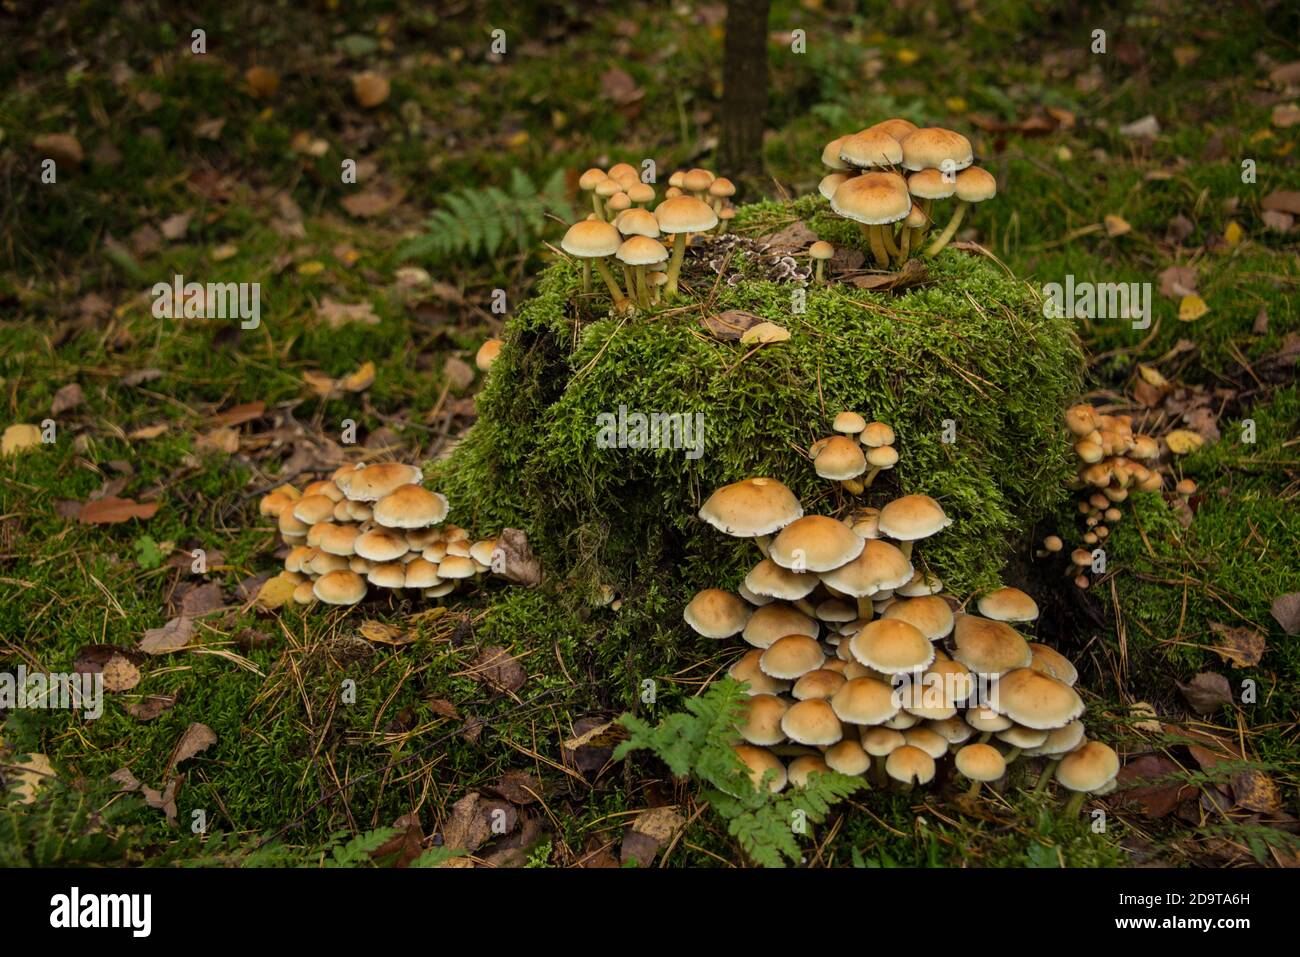 fungi sprawl on a stump Stock Photo